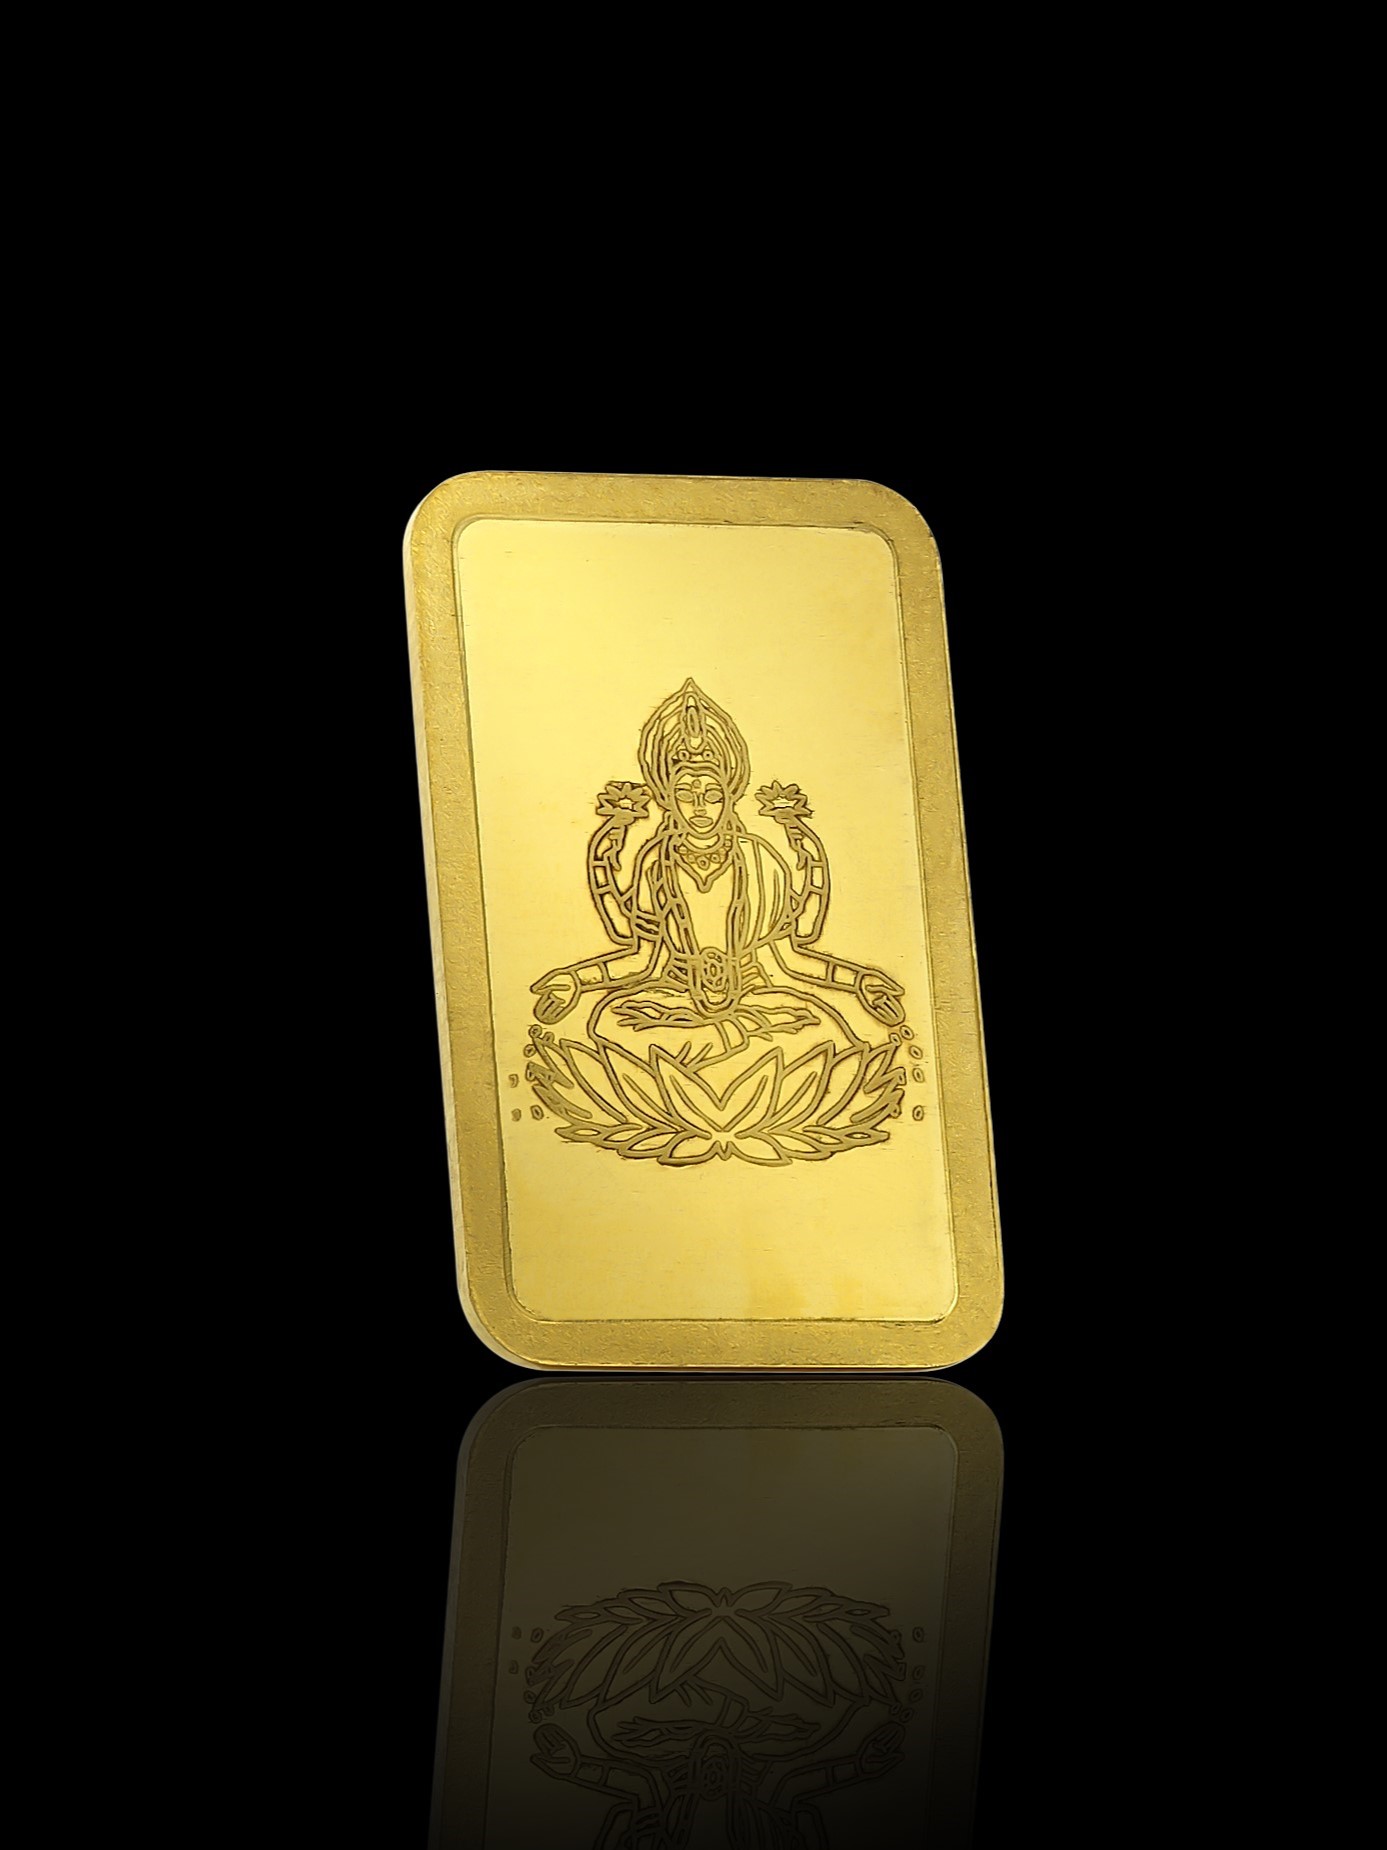 10g Lakshmi CPG Minted Gold Bullion 99.99% Pure